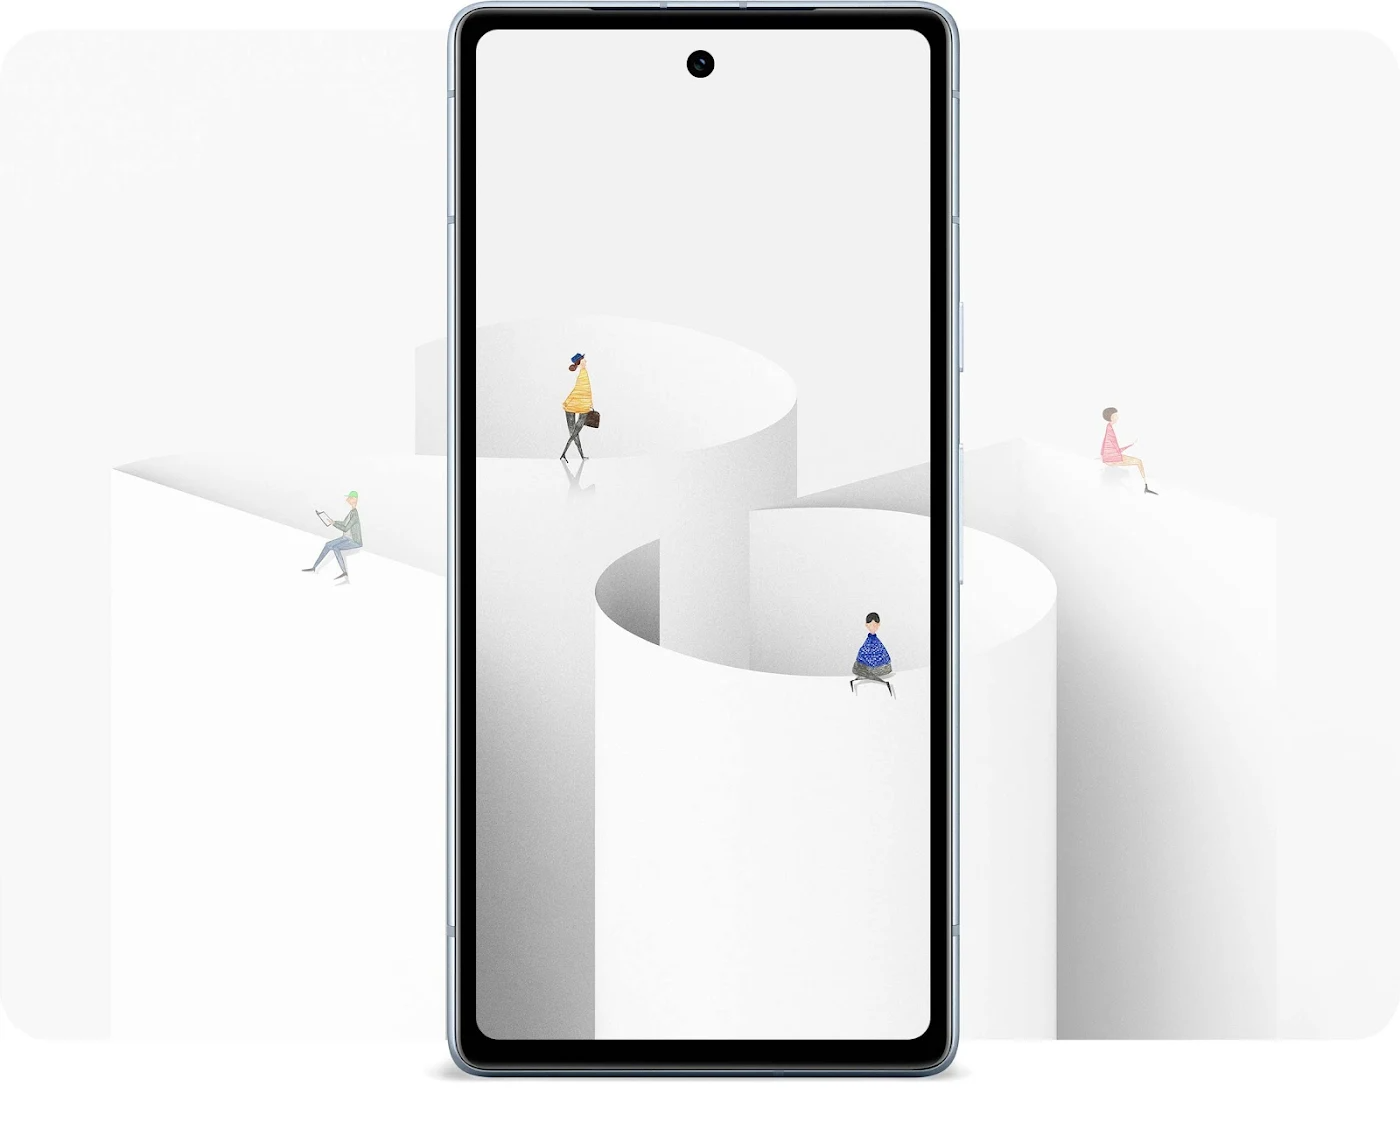 Nuevo fondo de pantalla minimalista de Pixel Superfans.